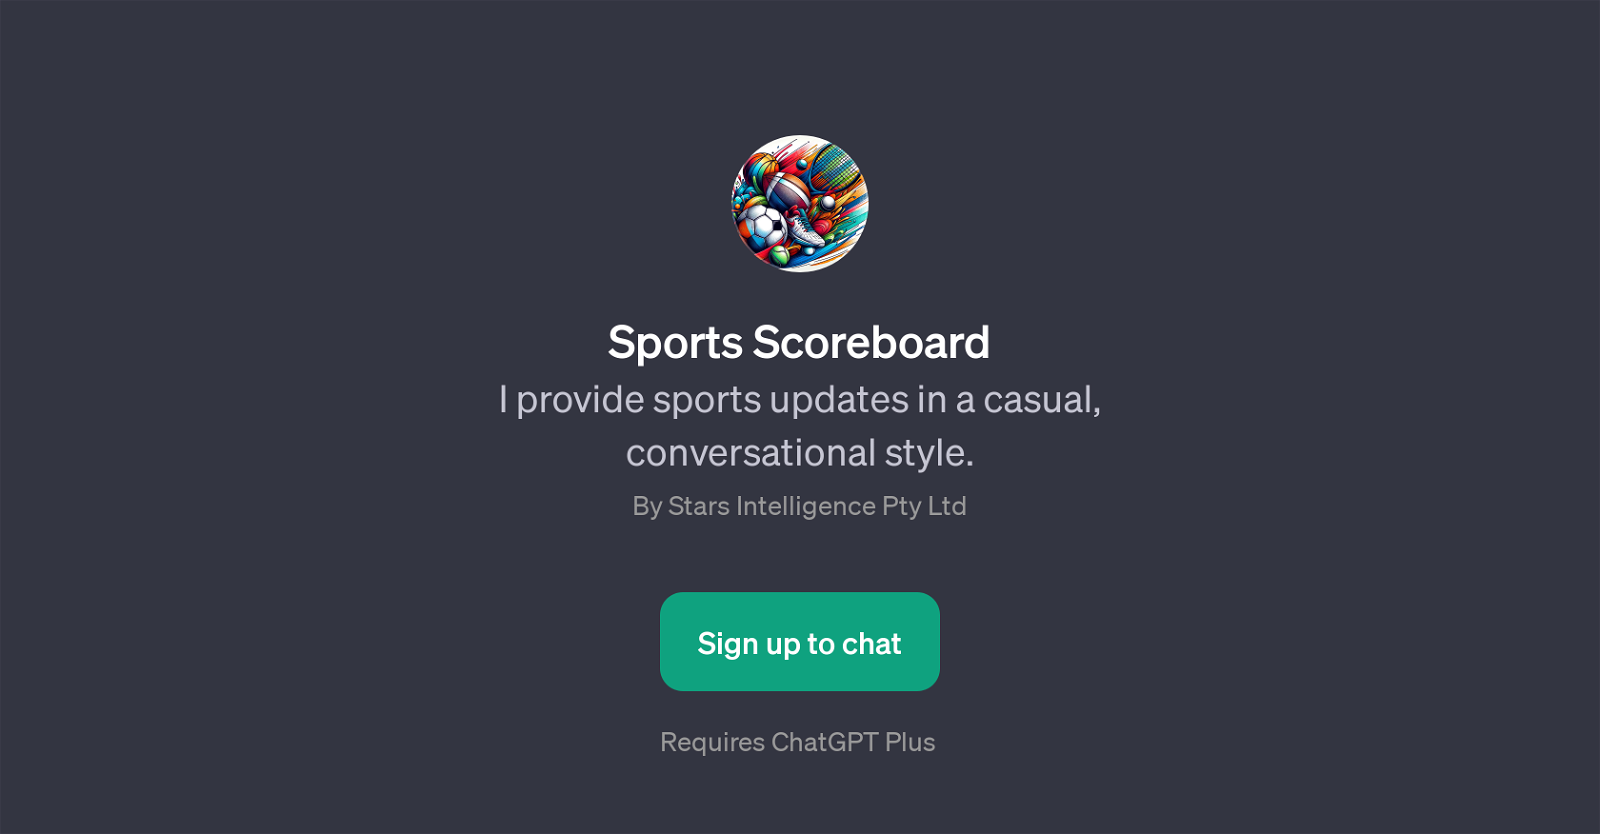 Sports Scoreboard website